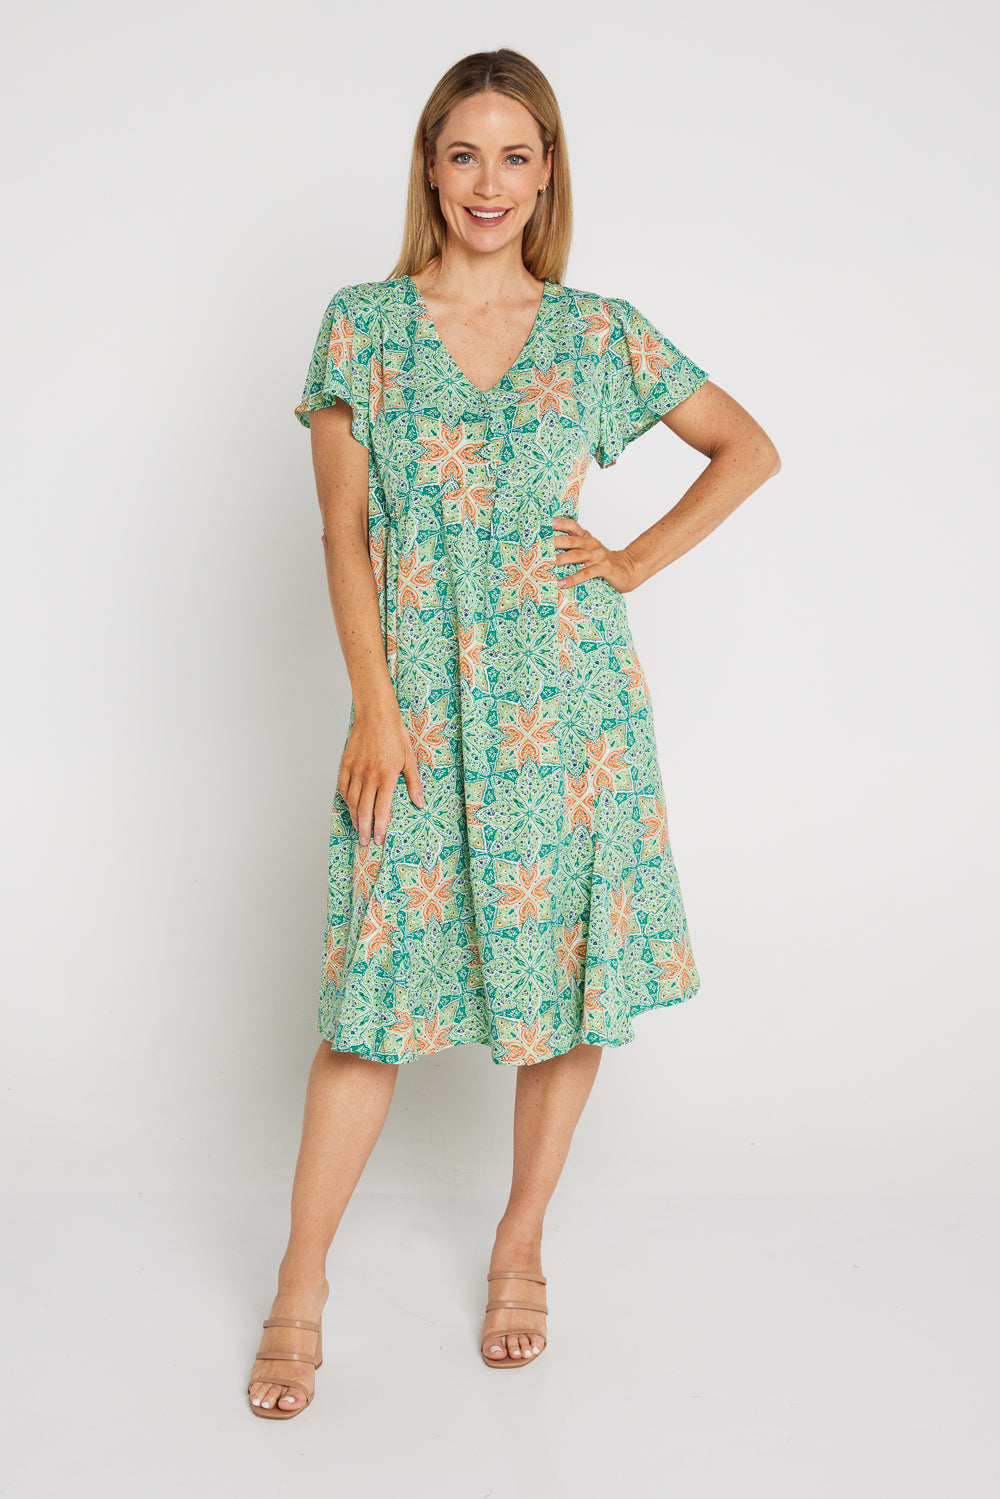 Stace Dress - Marrakesh Mint  Women's Summer Dresses Online